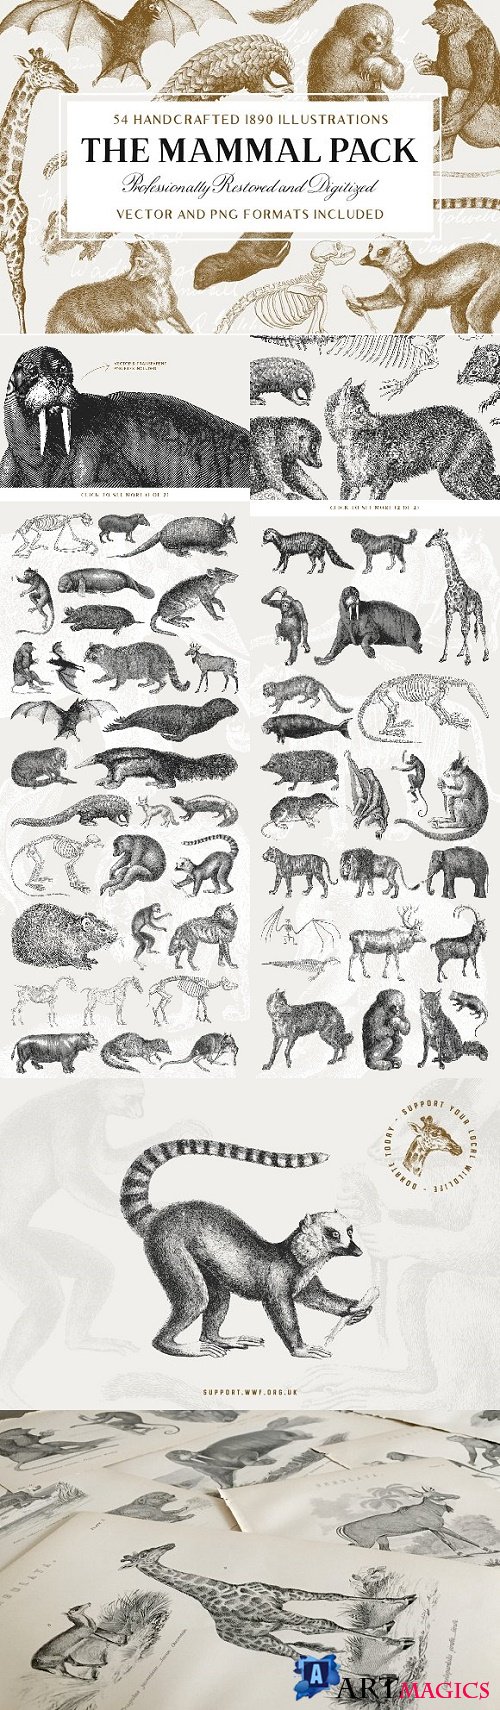 54 Handcrafted Mammal Illustrations - 2511172